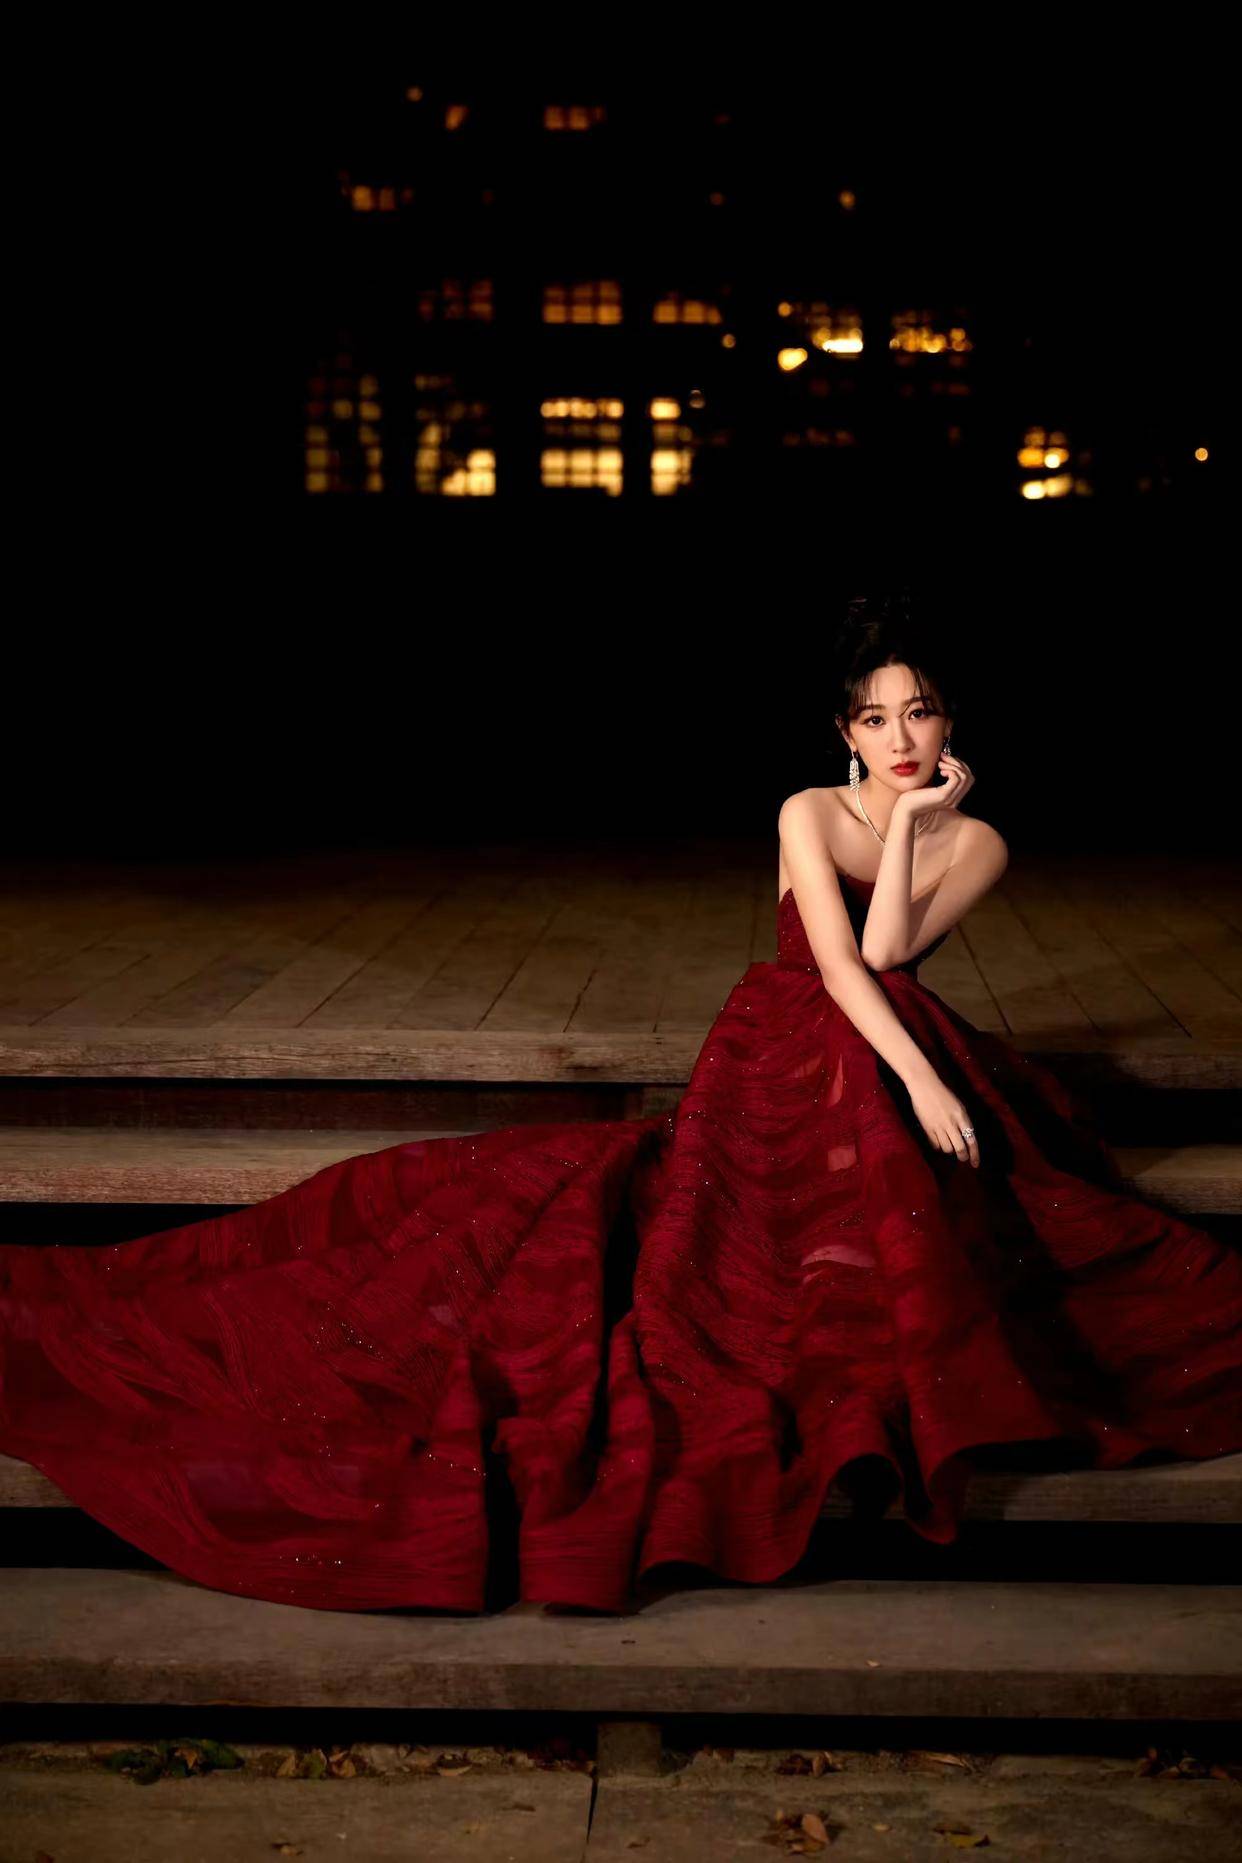 夜空中的女神一袭红裙,杨紫的浪漫装